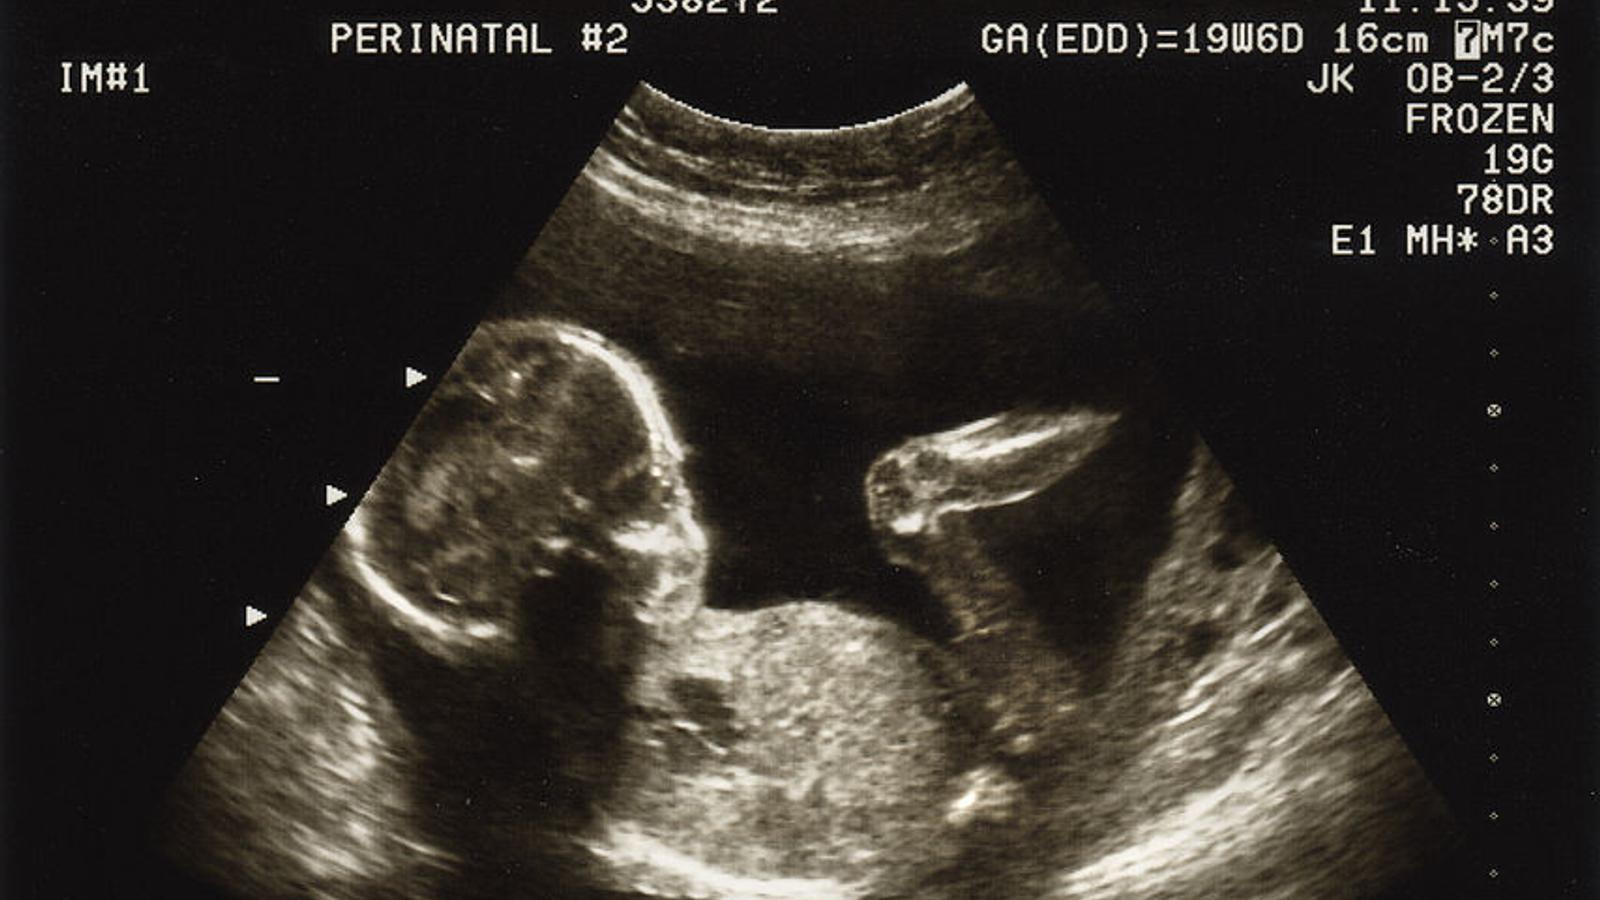 Ultraschallbild eines Babys